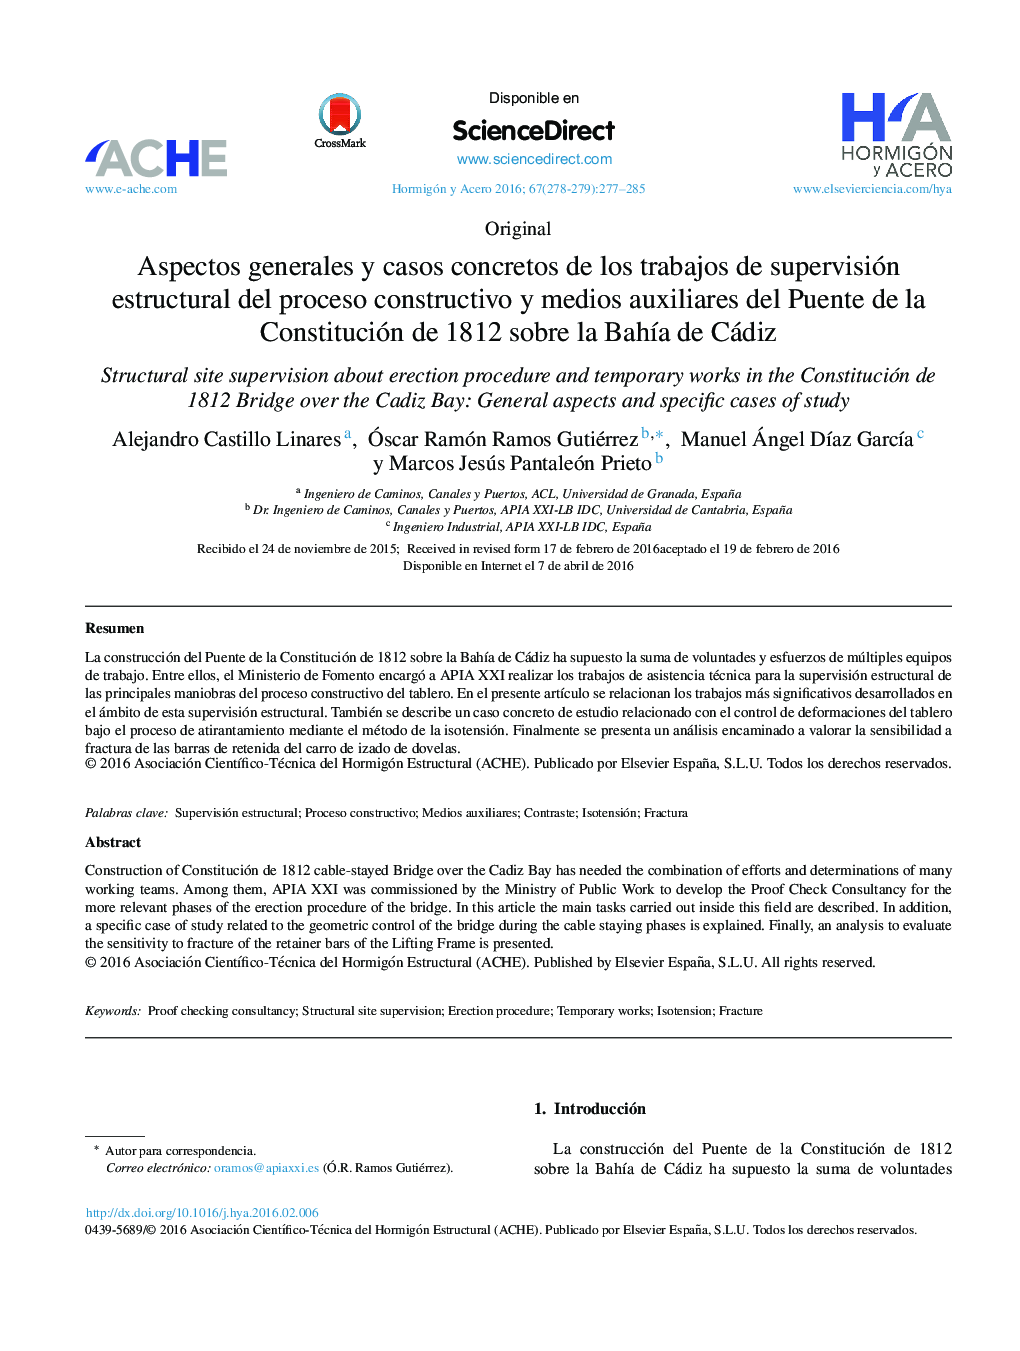 Aspectos generales y casos concretos de los trabajos de supervisión estructural del proceso constructivo y medios auxiliares del Puente de la Constitución de 1812 sobre la BahÃ­a de Cádiz